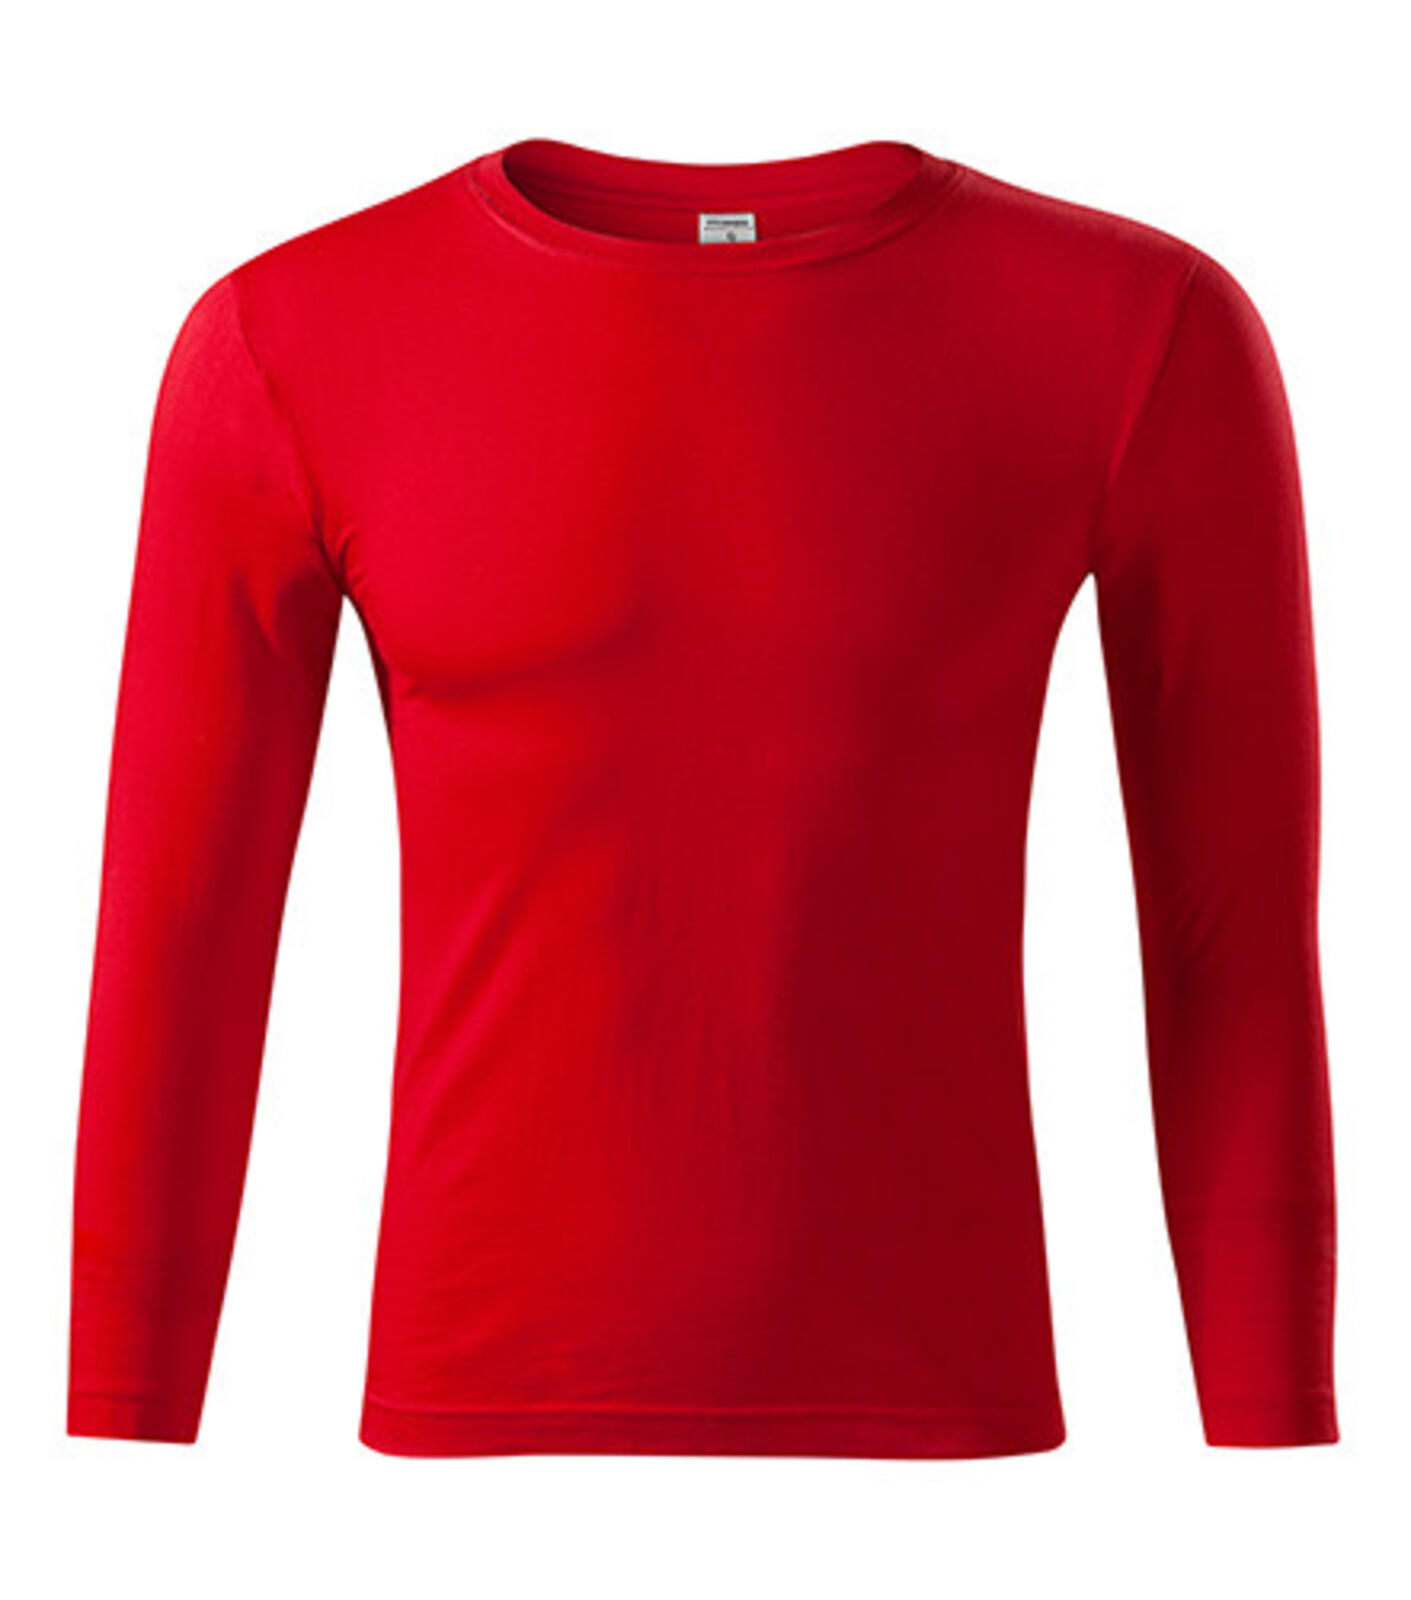 Unisex tričko s dlhým rukávom Progress LS P75 - veľkosť: M, farba: červená